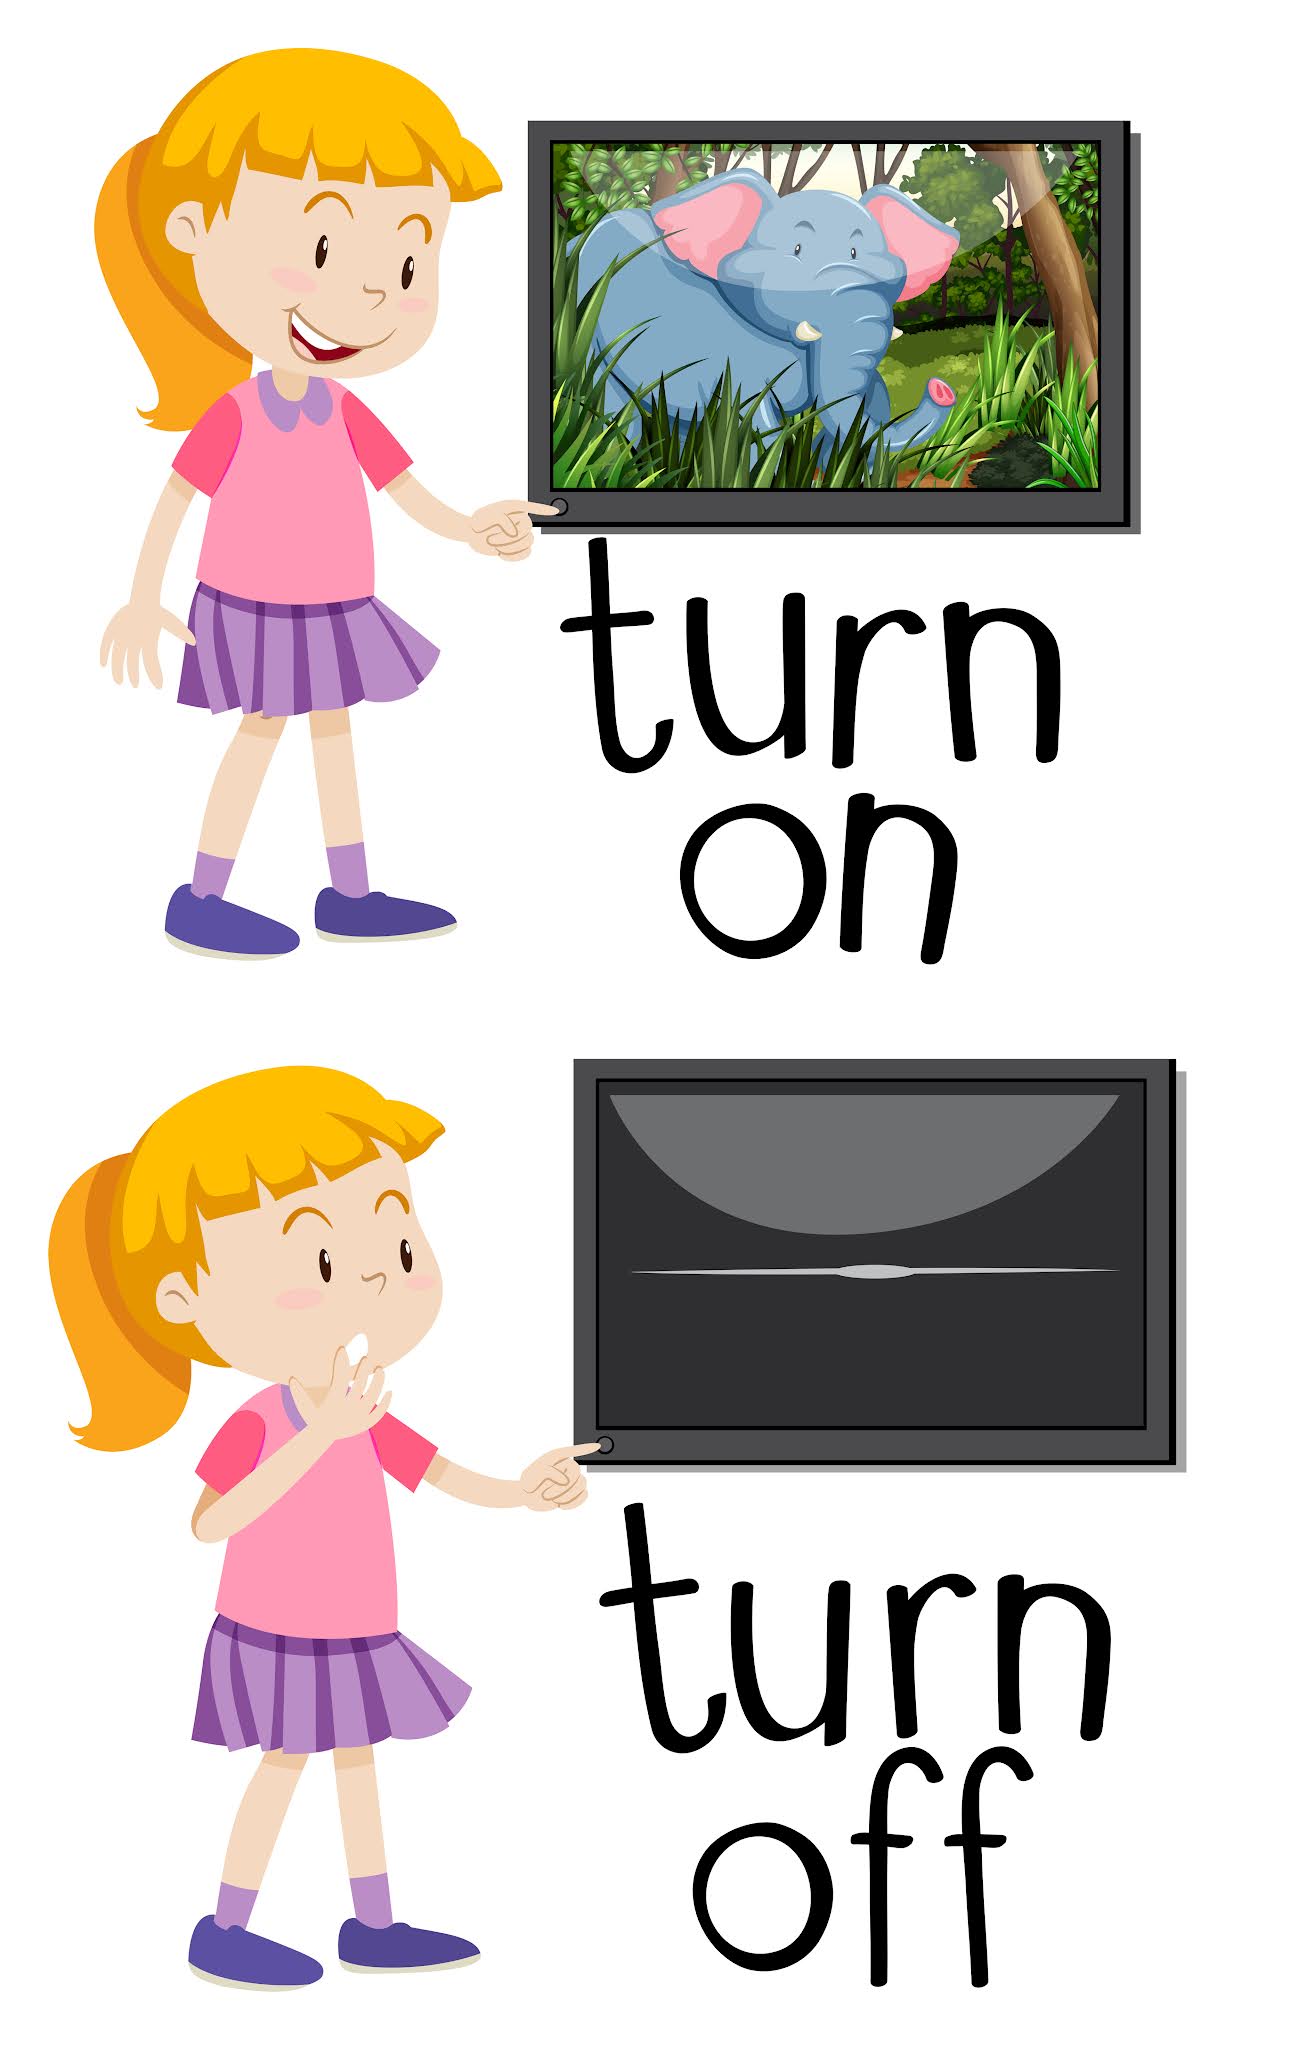 Turn off means. Turn on off. Turn on turn off. Turn off картинка. Turn картинка для детей.